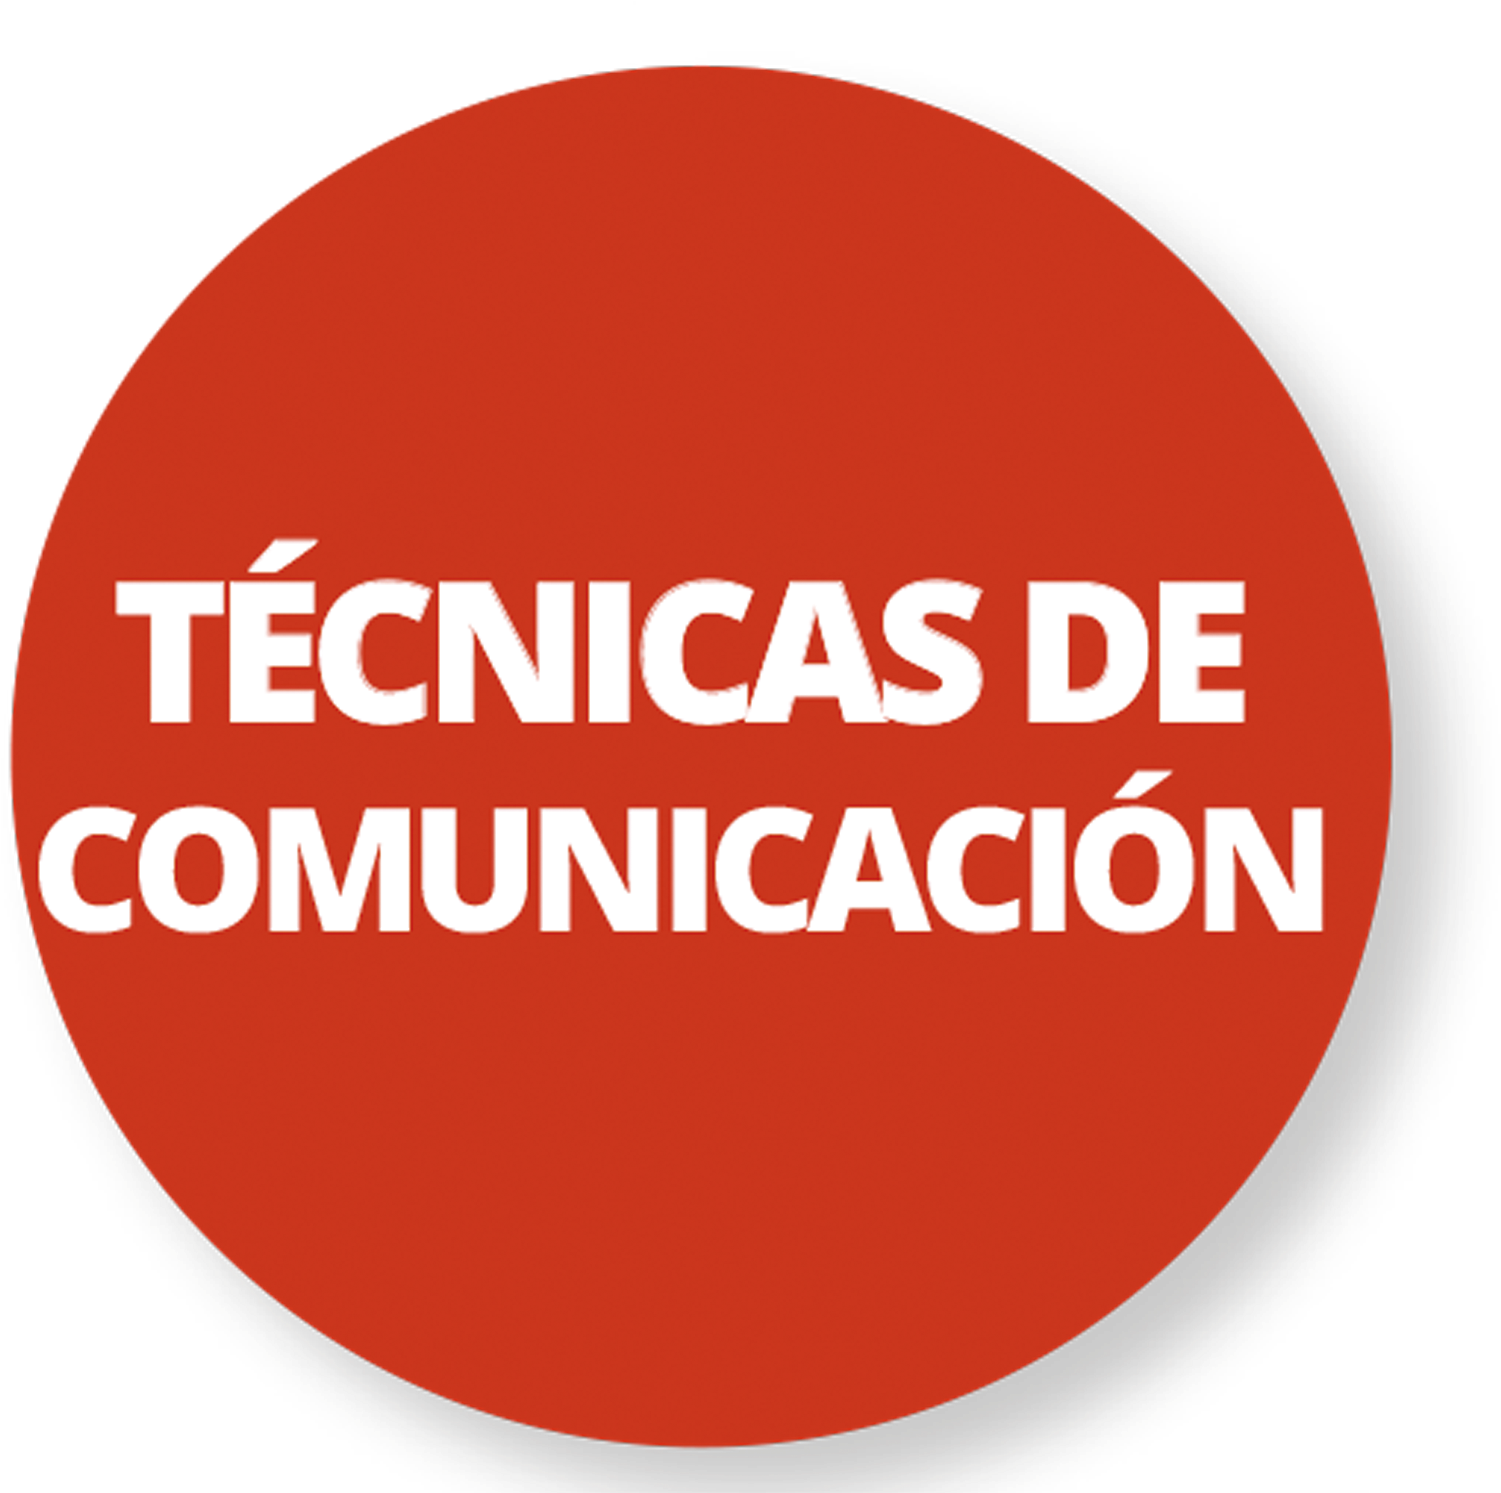 Técnicas De Comunicación - Agency Agreement (1772x1772)